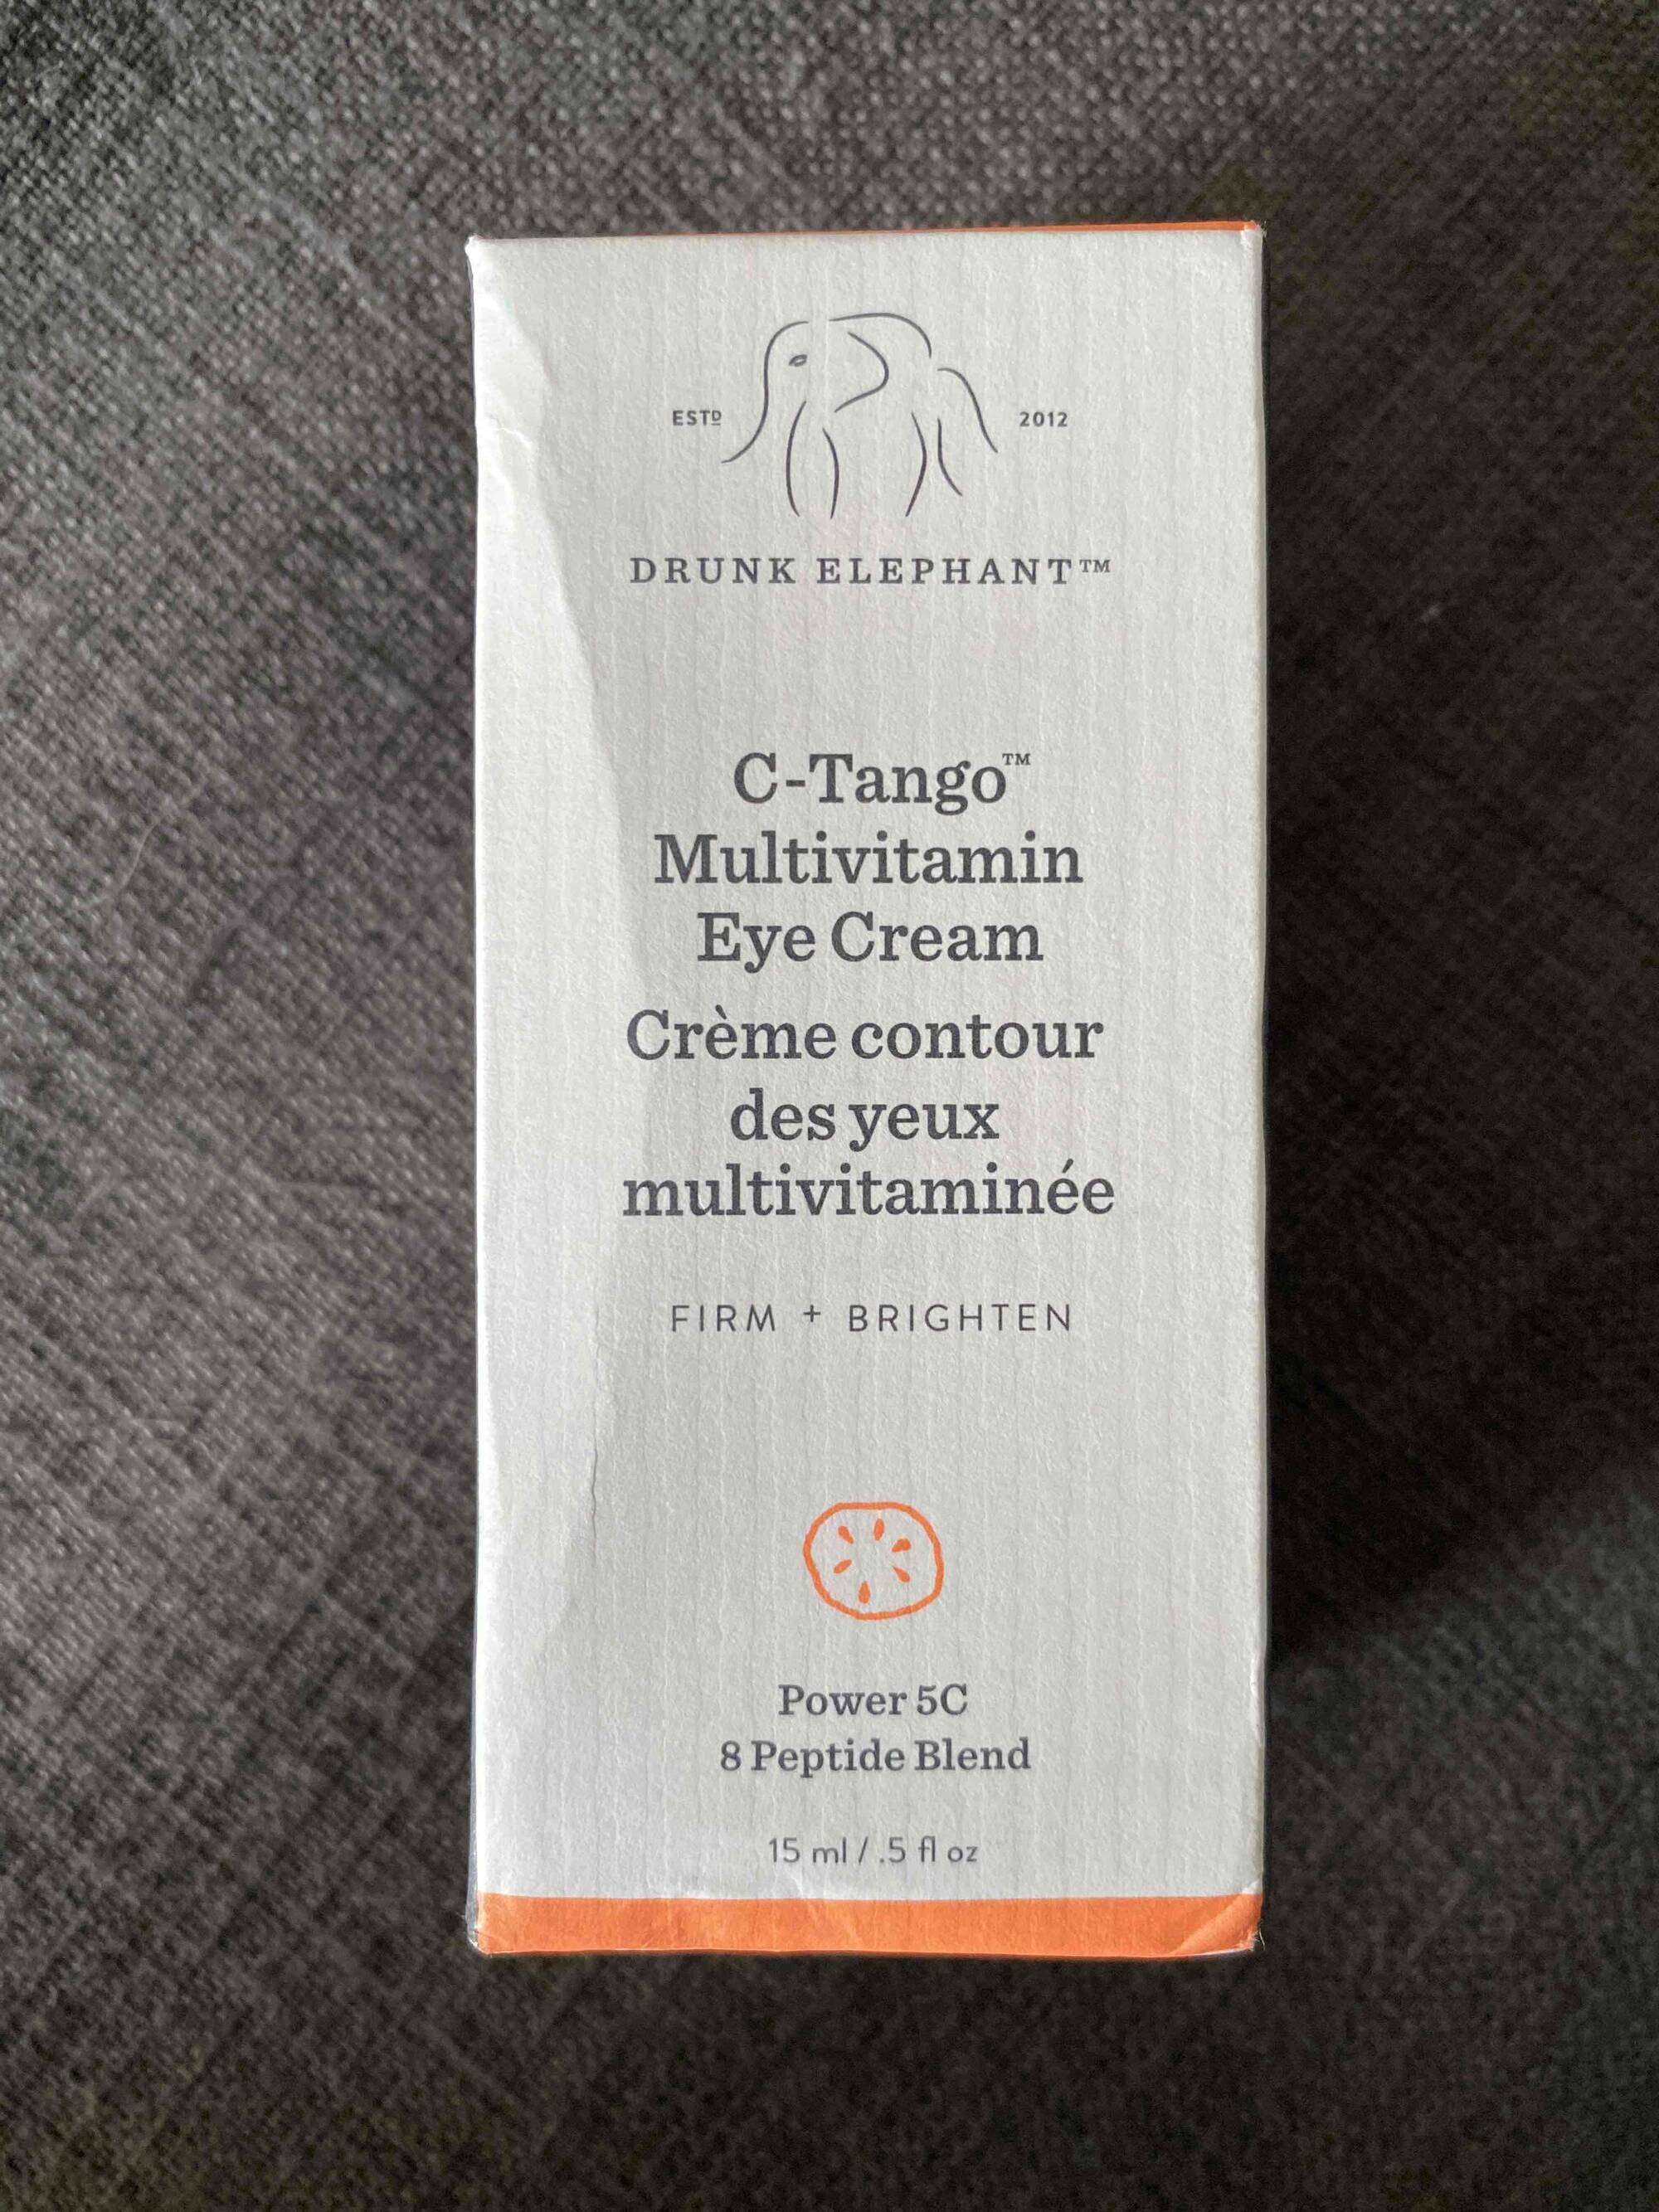 DRUNK ELEPHANT - Crème contour des yeux multivitaminée